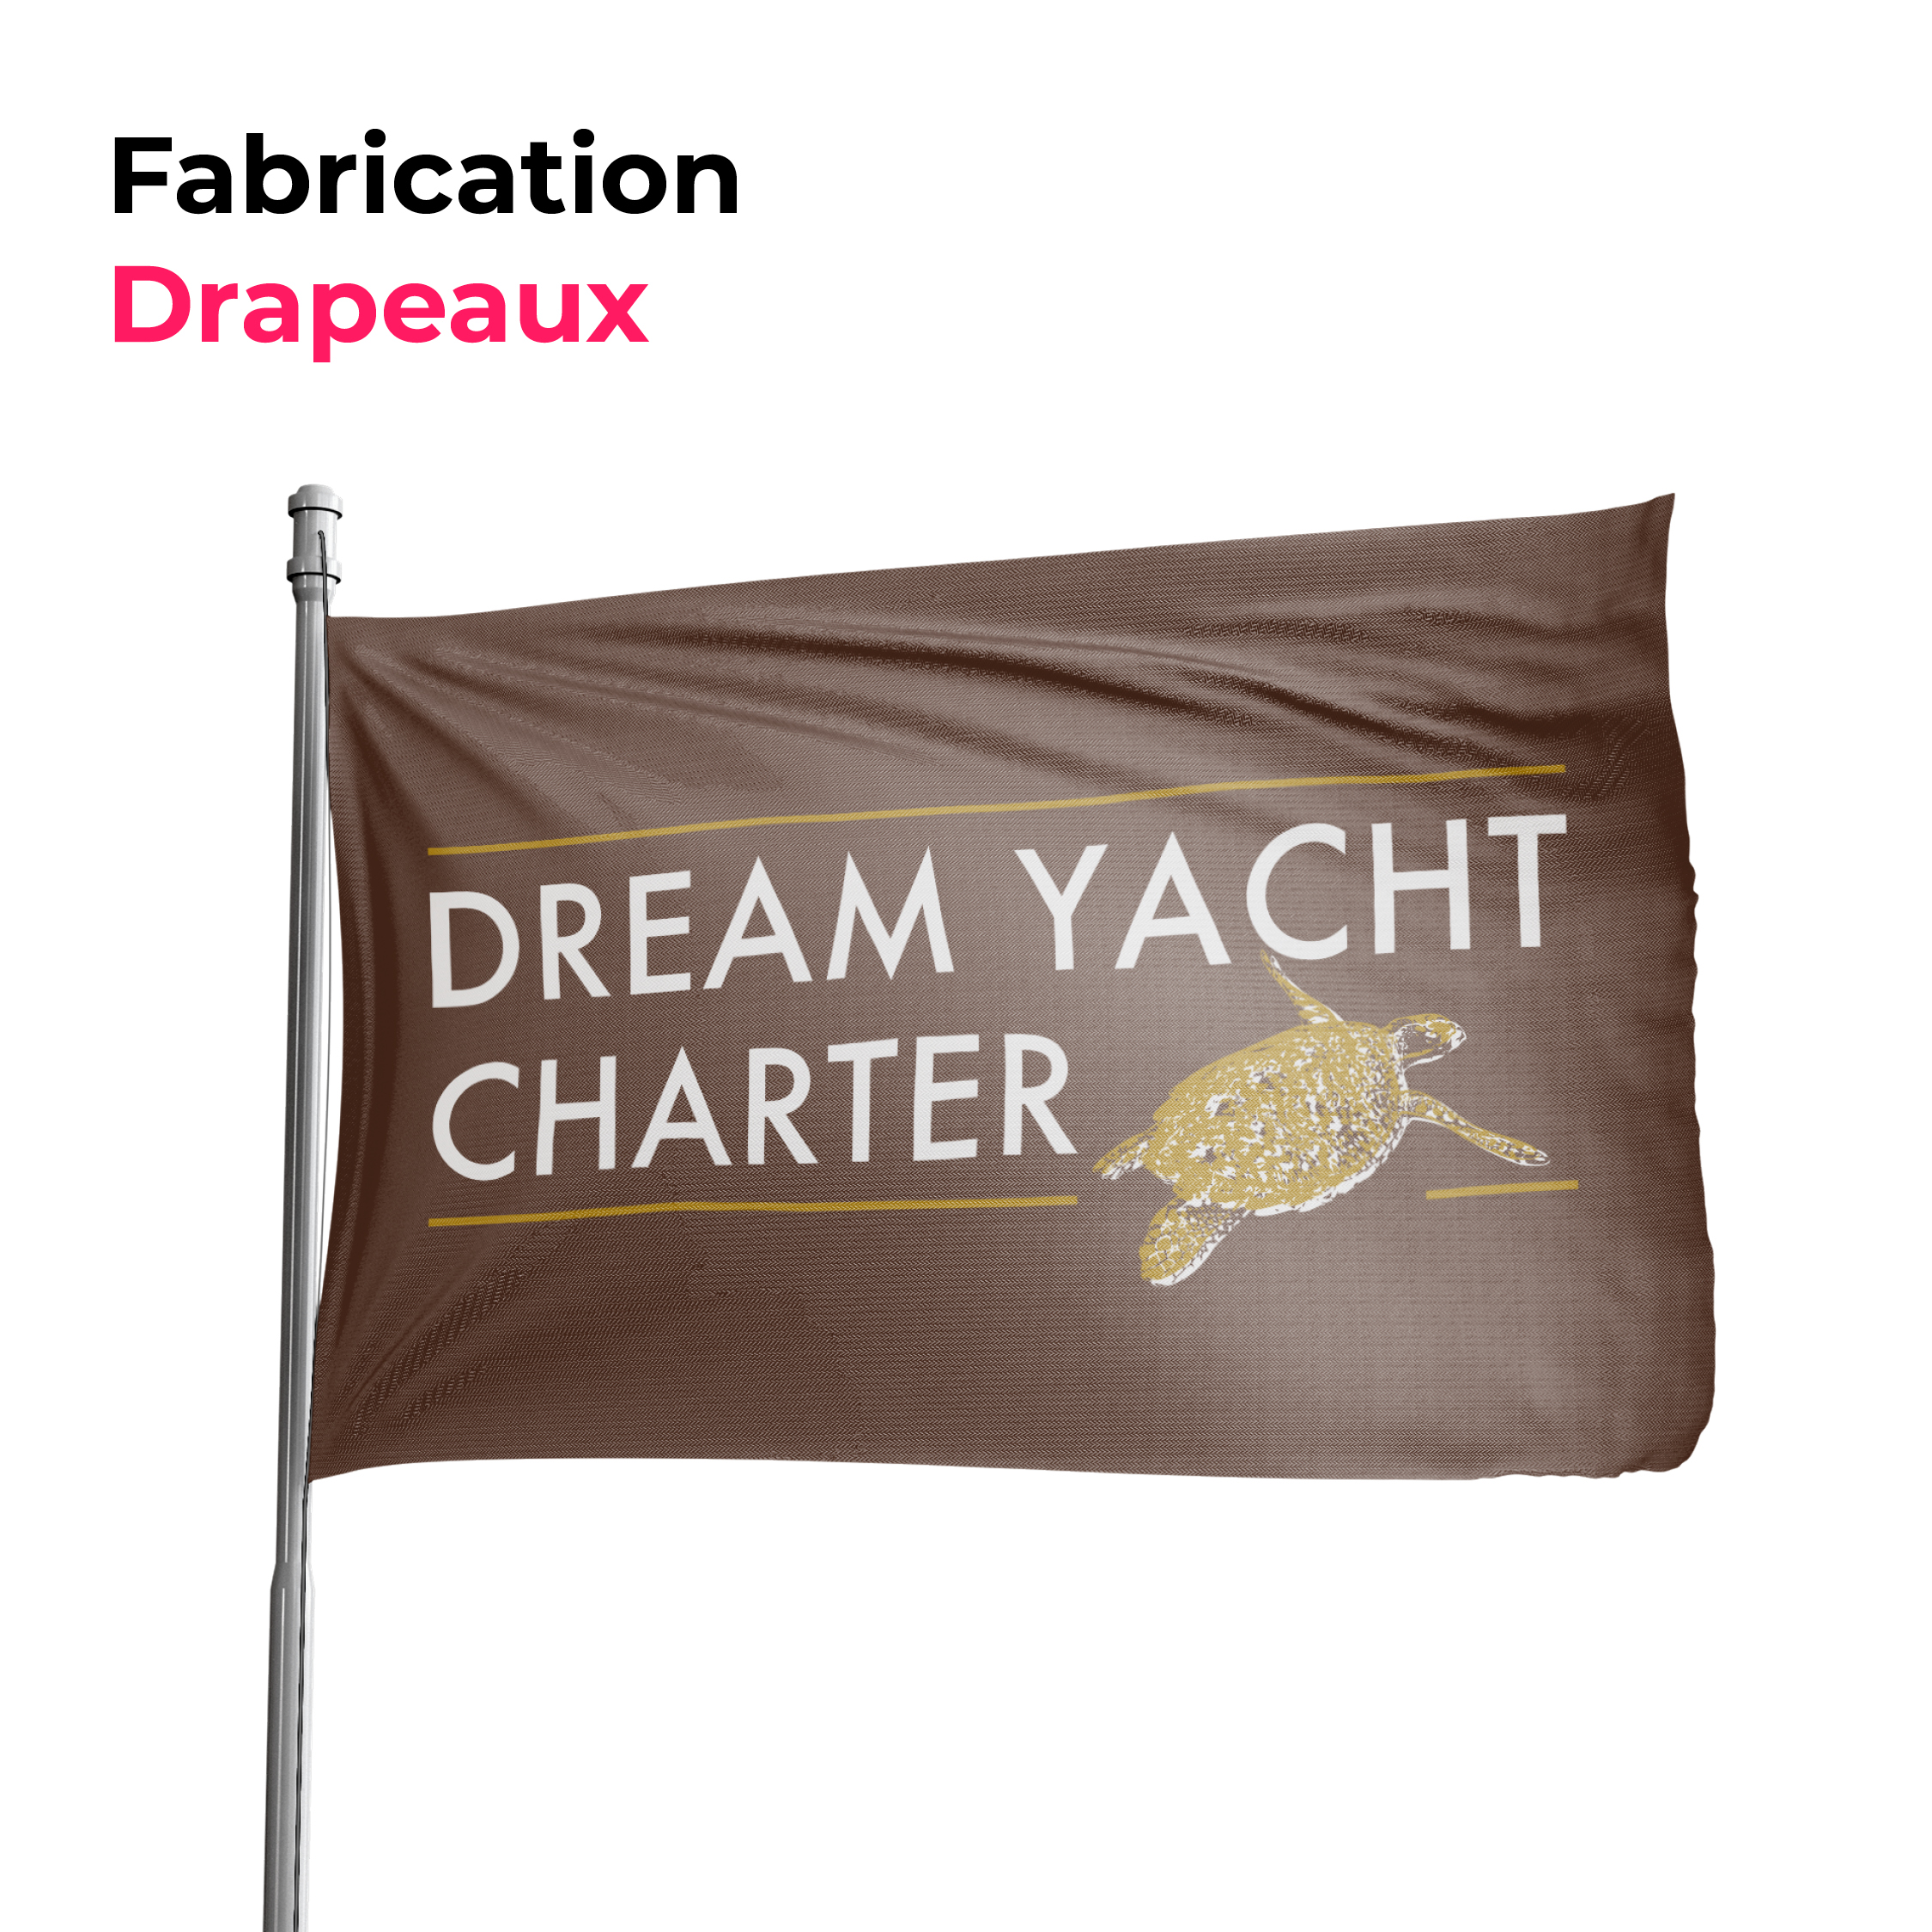 drapeau marron avec logo dream yacht charter en blanc et or dessus